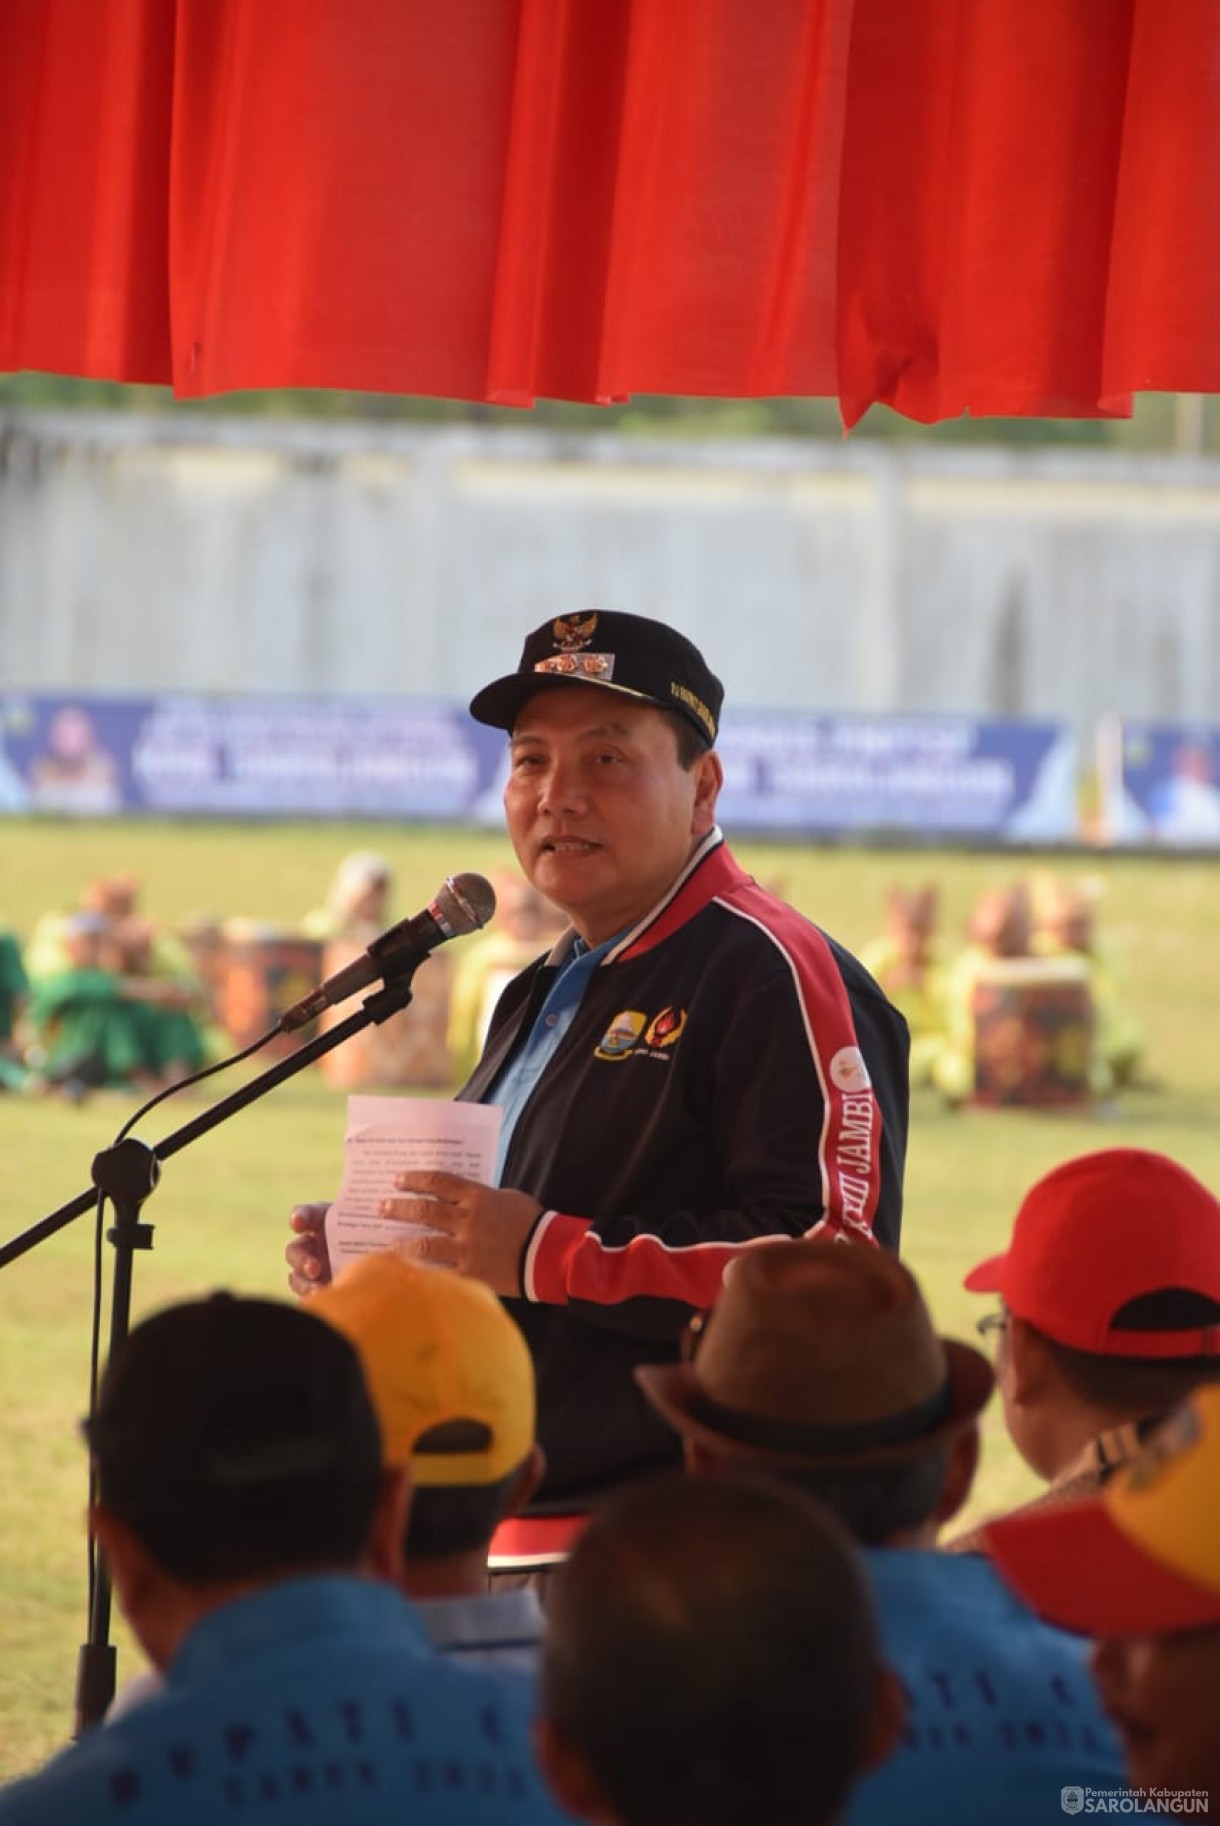 27 September 2023 - Penjabat Bupati Sarolangun Membuka Turnamen Bupati Cup di Lapangan KONI Sarolangun